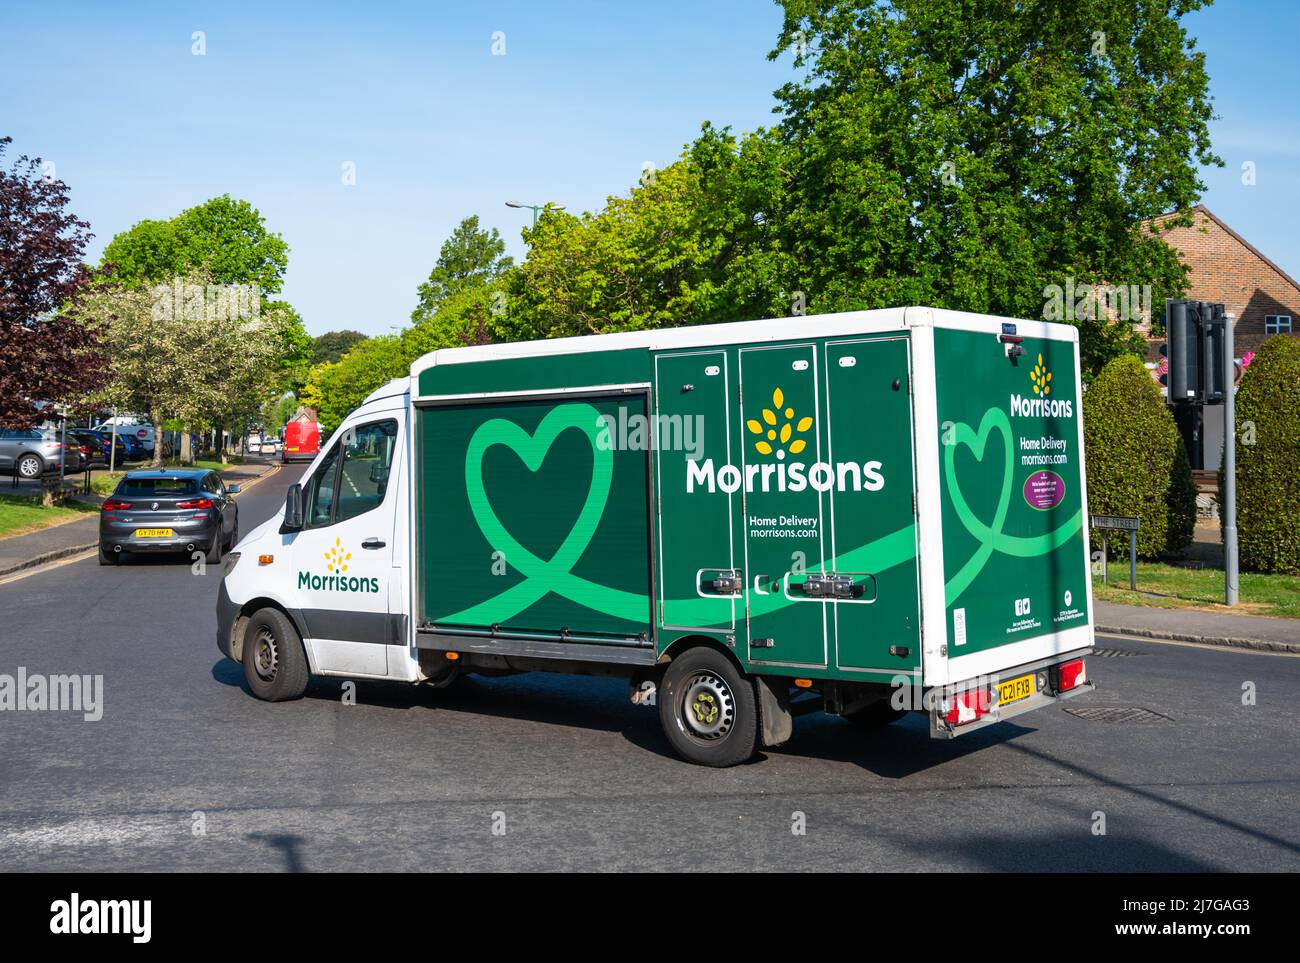 Lieferwagen für Lebensmittel oder Lebensmittel für das Morrisons-Lebensmittelgeschäft auf dem Weg zur Auslieferung von Lebensmitteln an Online-Kunden in West Sussex, England, Großbritannien. Stockfoto